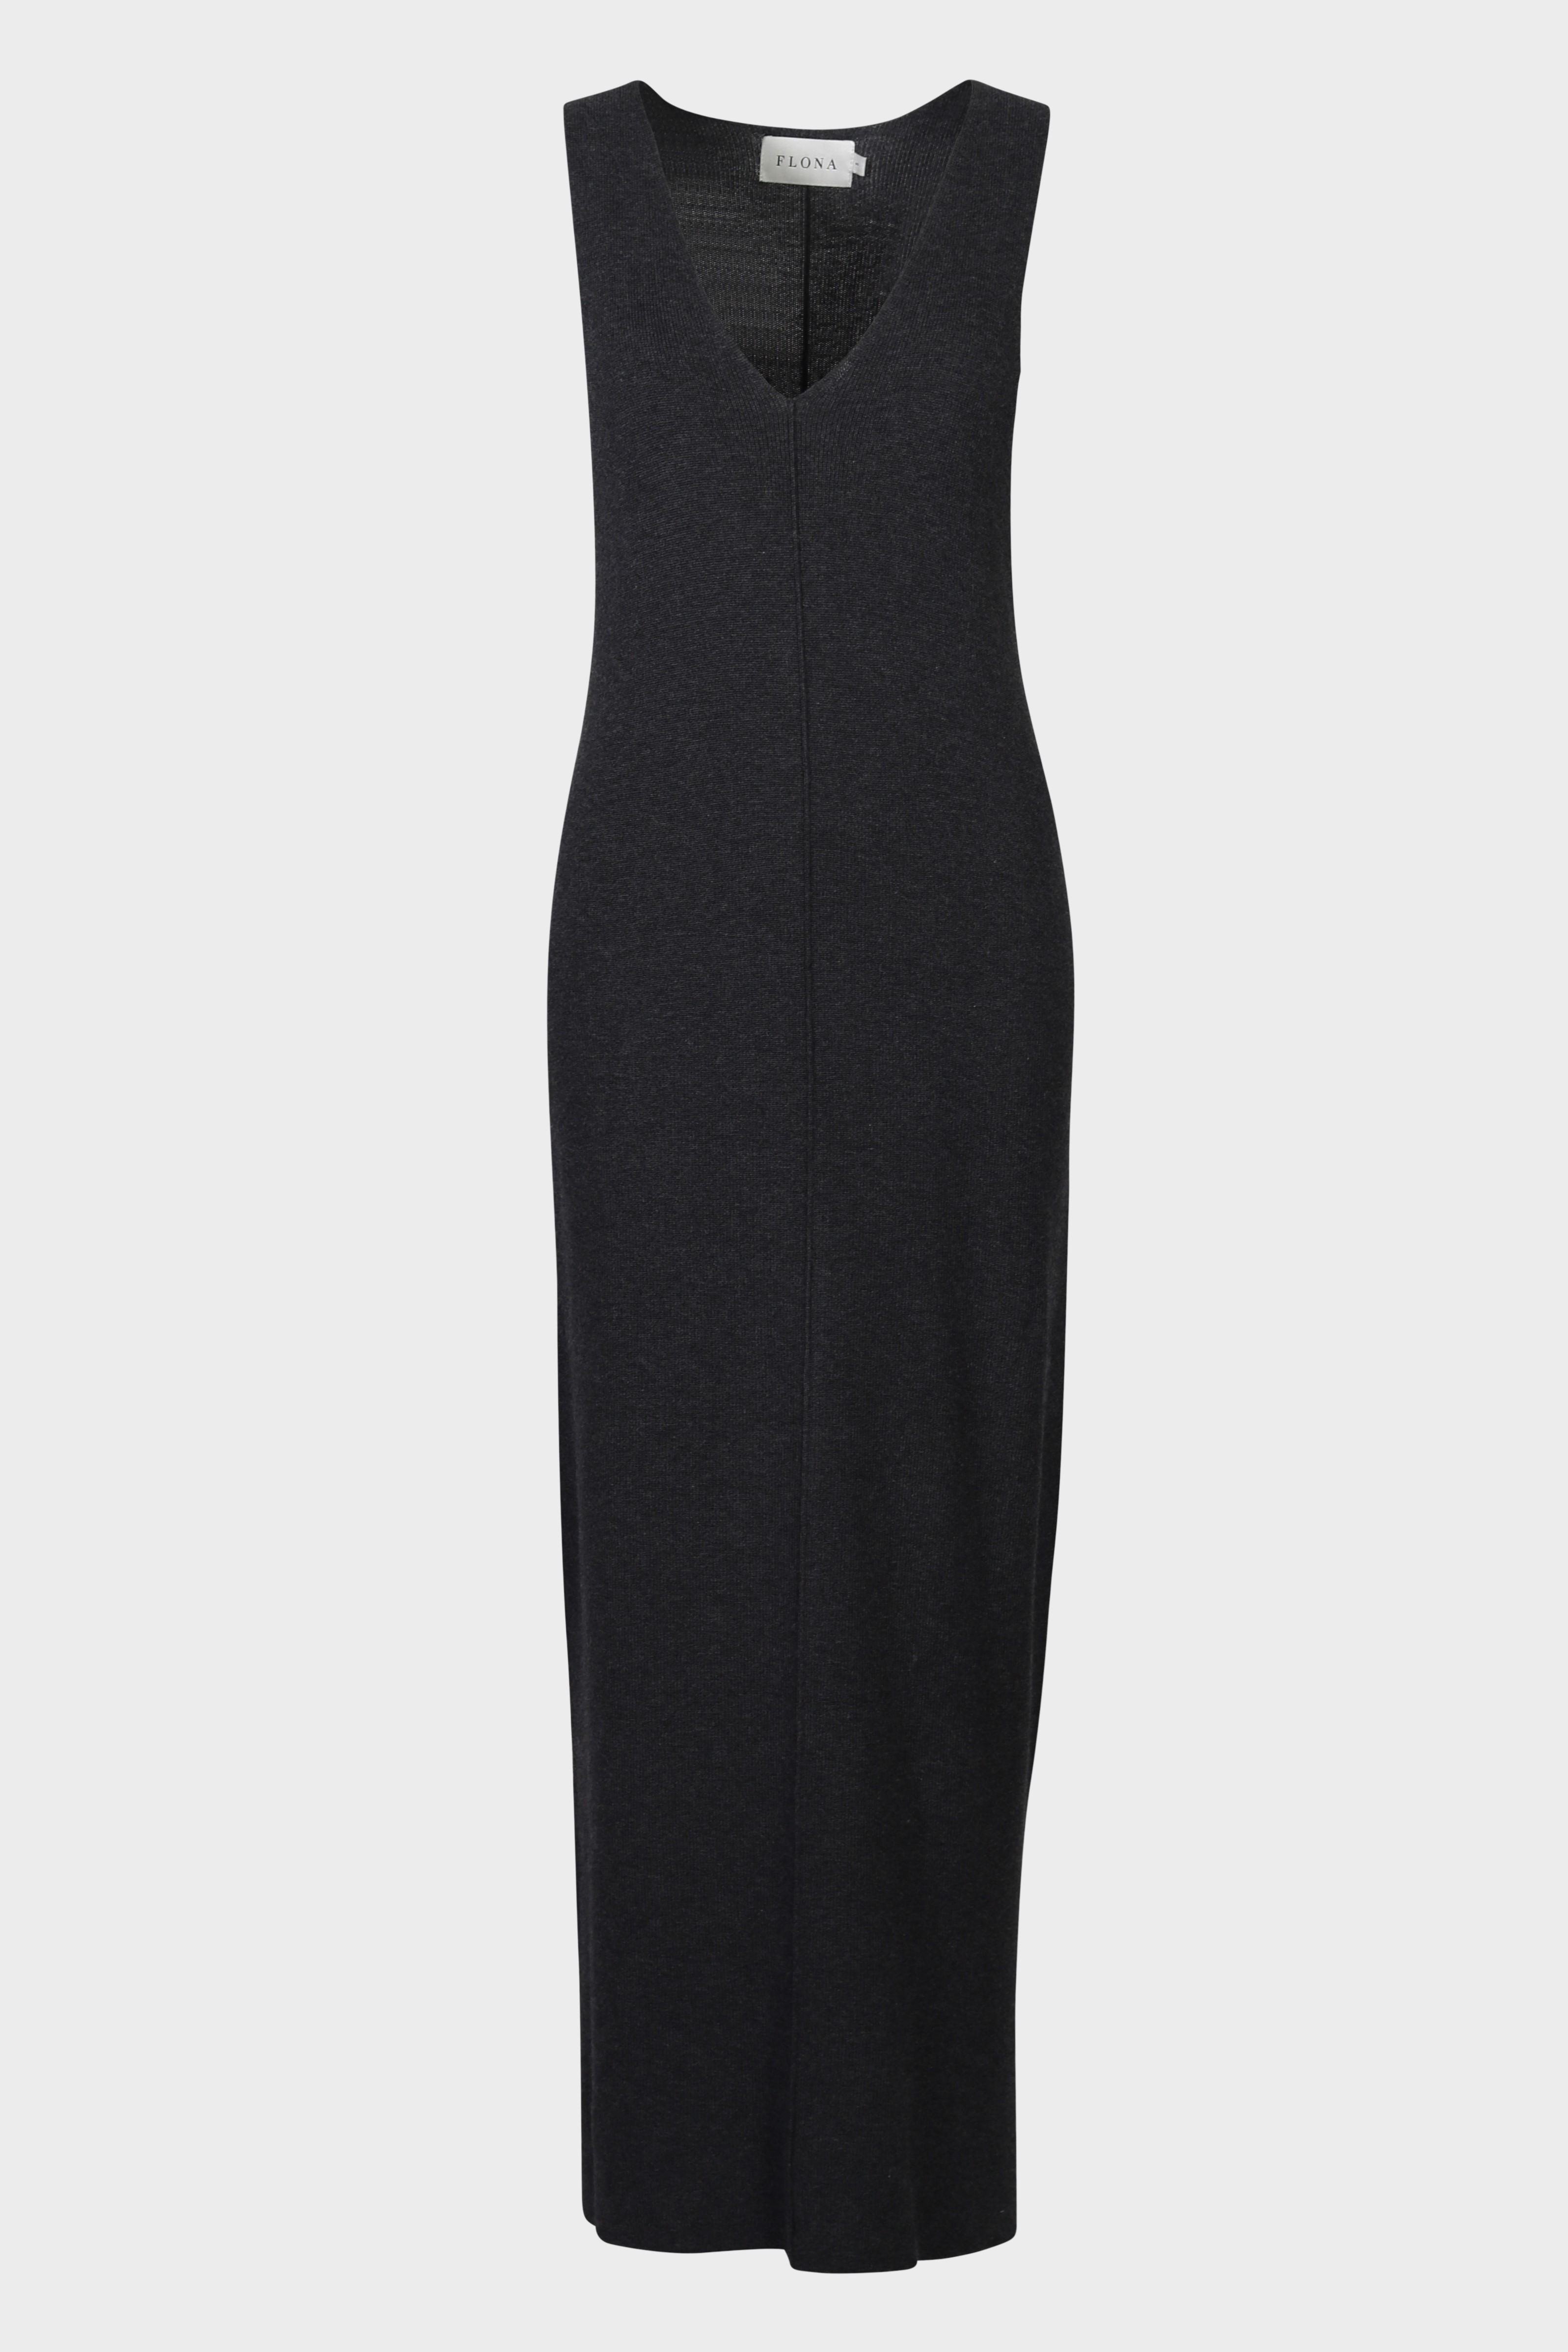 FLONA Cotton/ Cashmere Knit Dress in Dark Grey